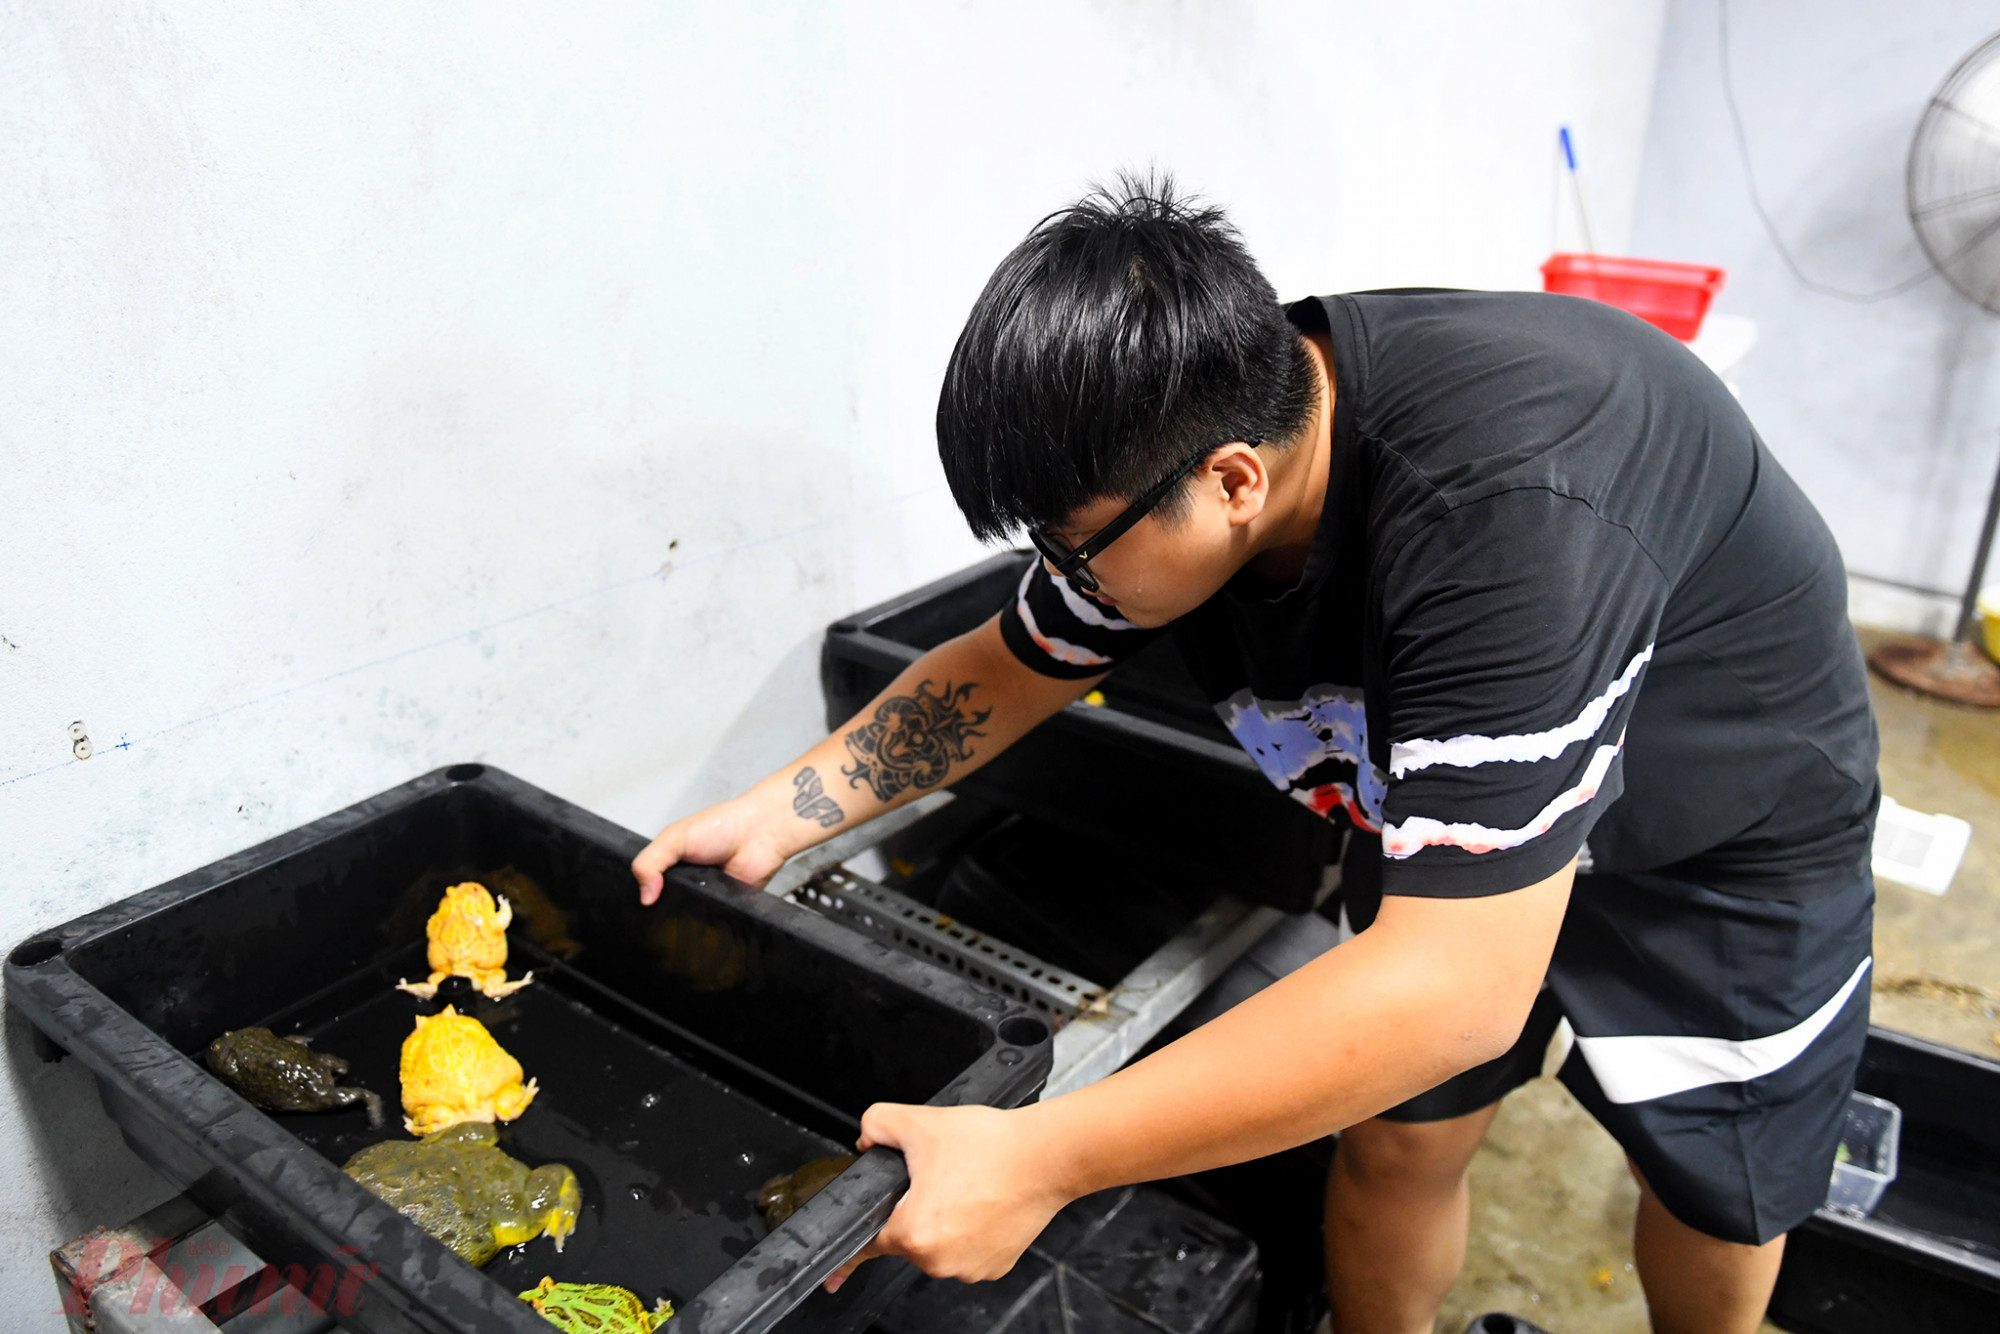 Phong trào nuôi ếch cảnh làm thú cưng đang phát triển trong khoảng thời gian gần đây tại TPHCM. Huỳnh Anh Khoa (26 tuổi) hiện đang sở hữu khoảng 200 con ếch cảnh, trong đó có hơn 10 con trưởng thành có giá trị lớn.